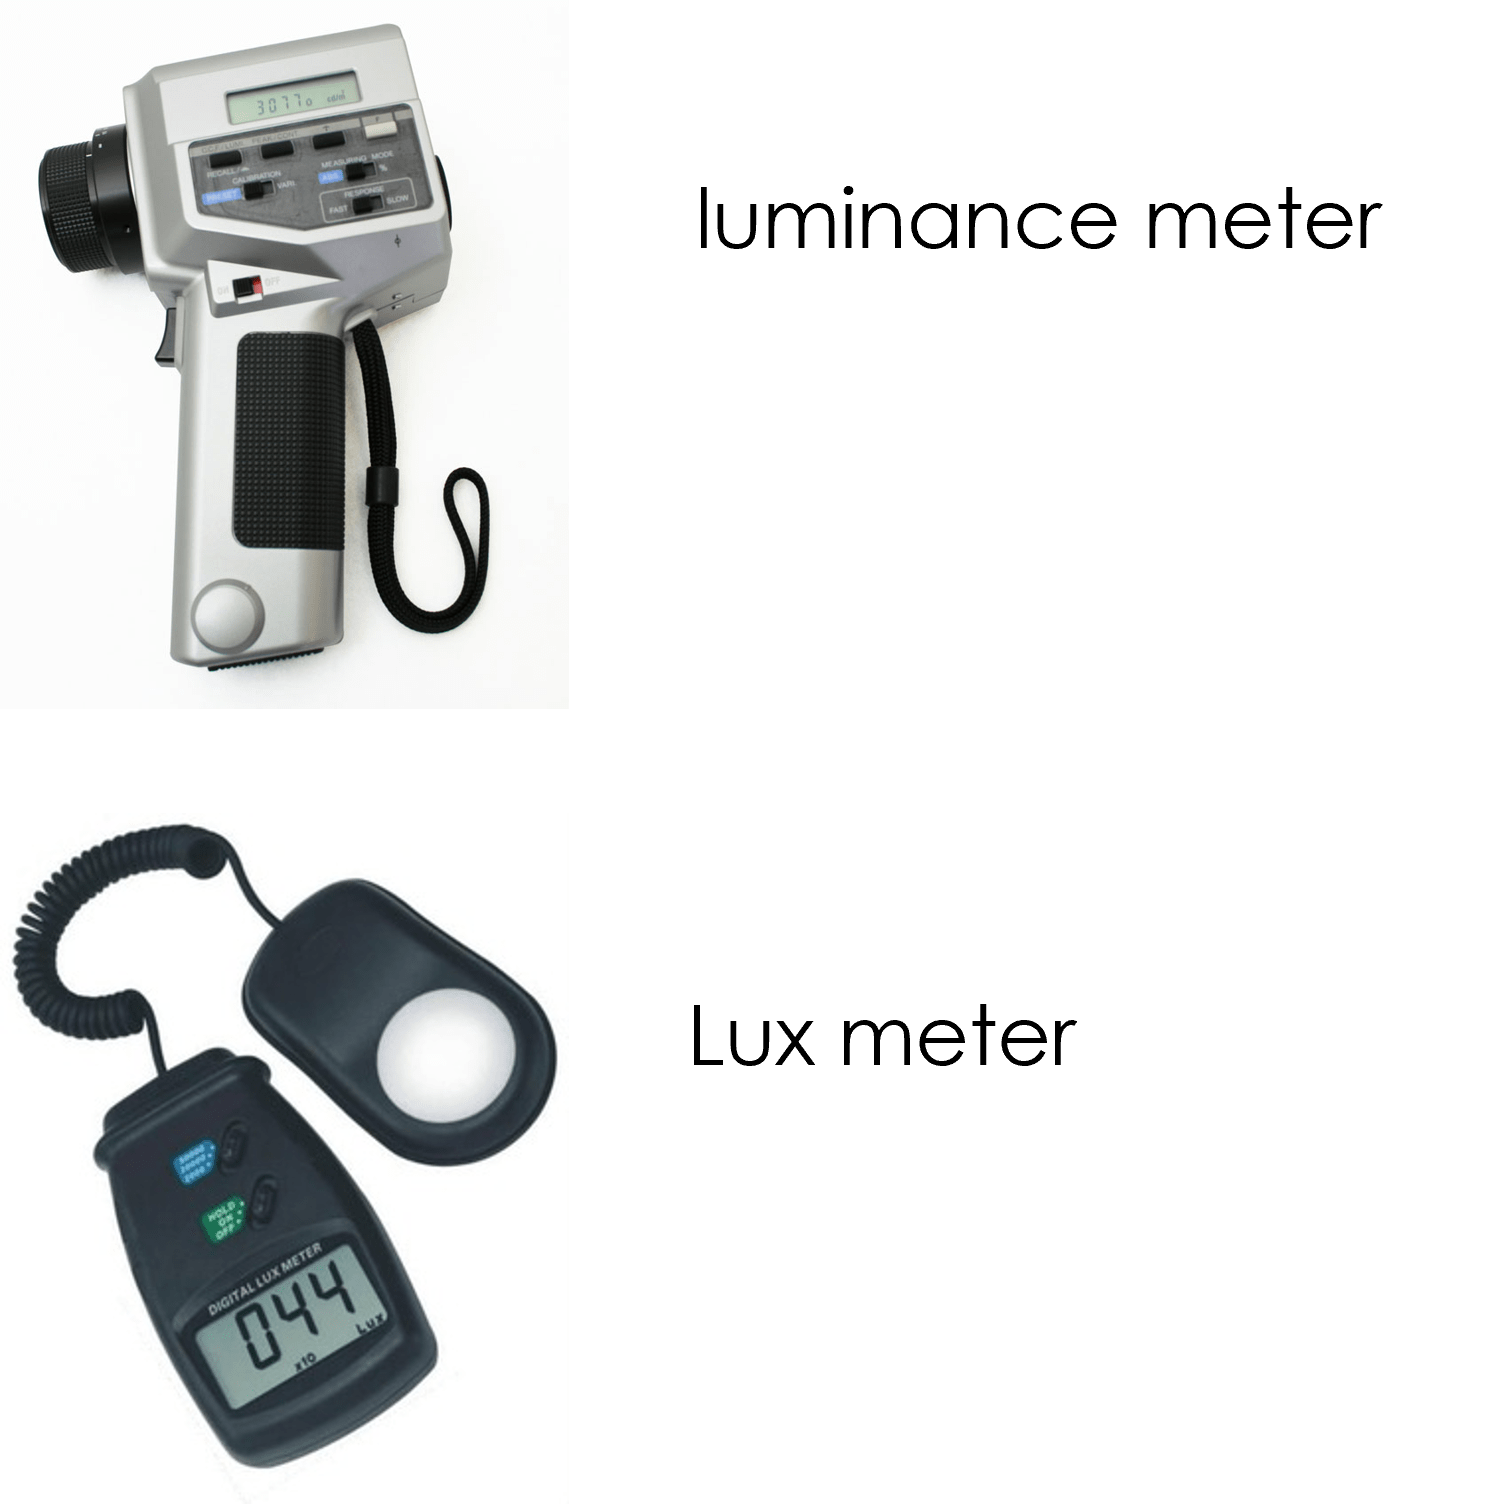 Meters